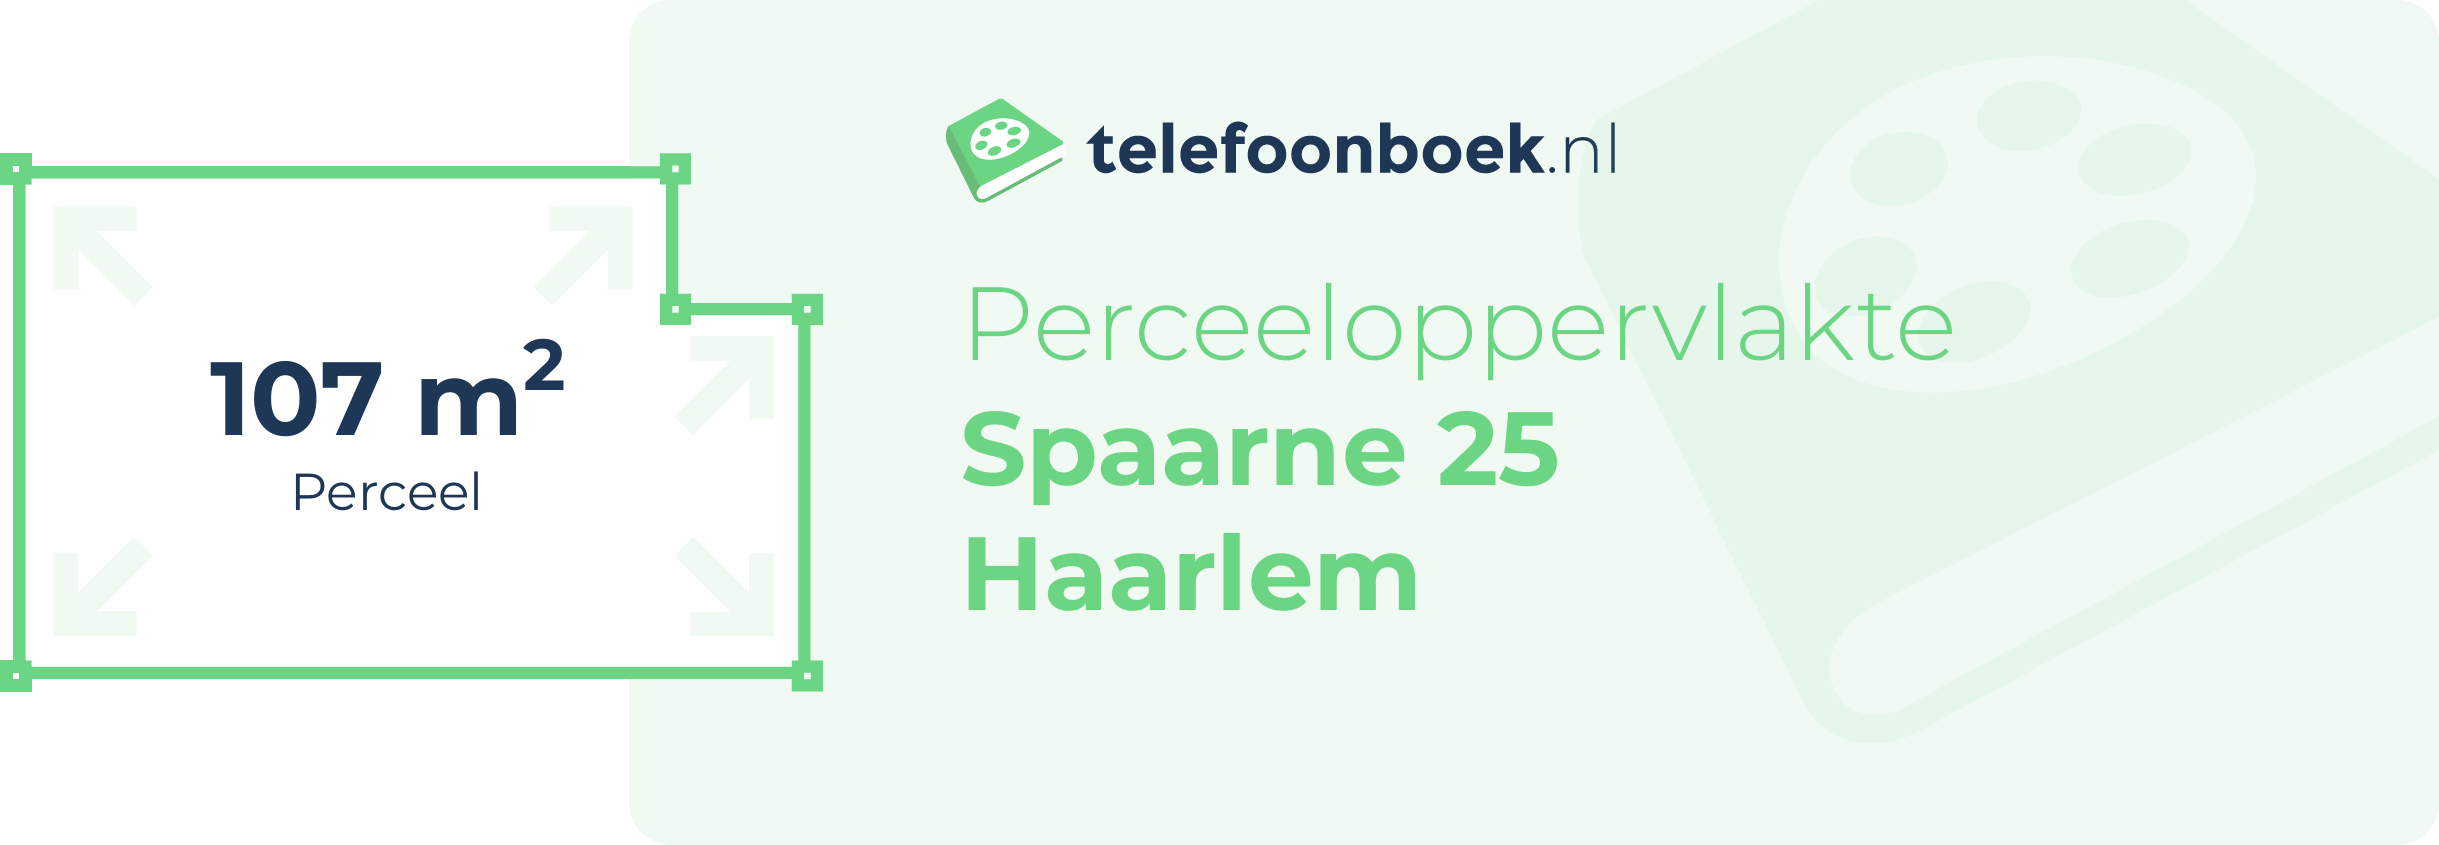 Perceeloppervlakte Spaarne 25 Haarlem